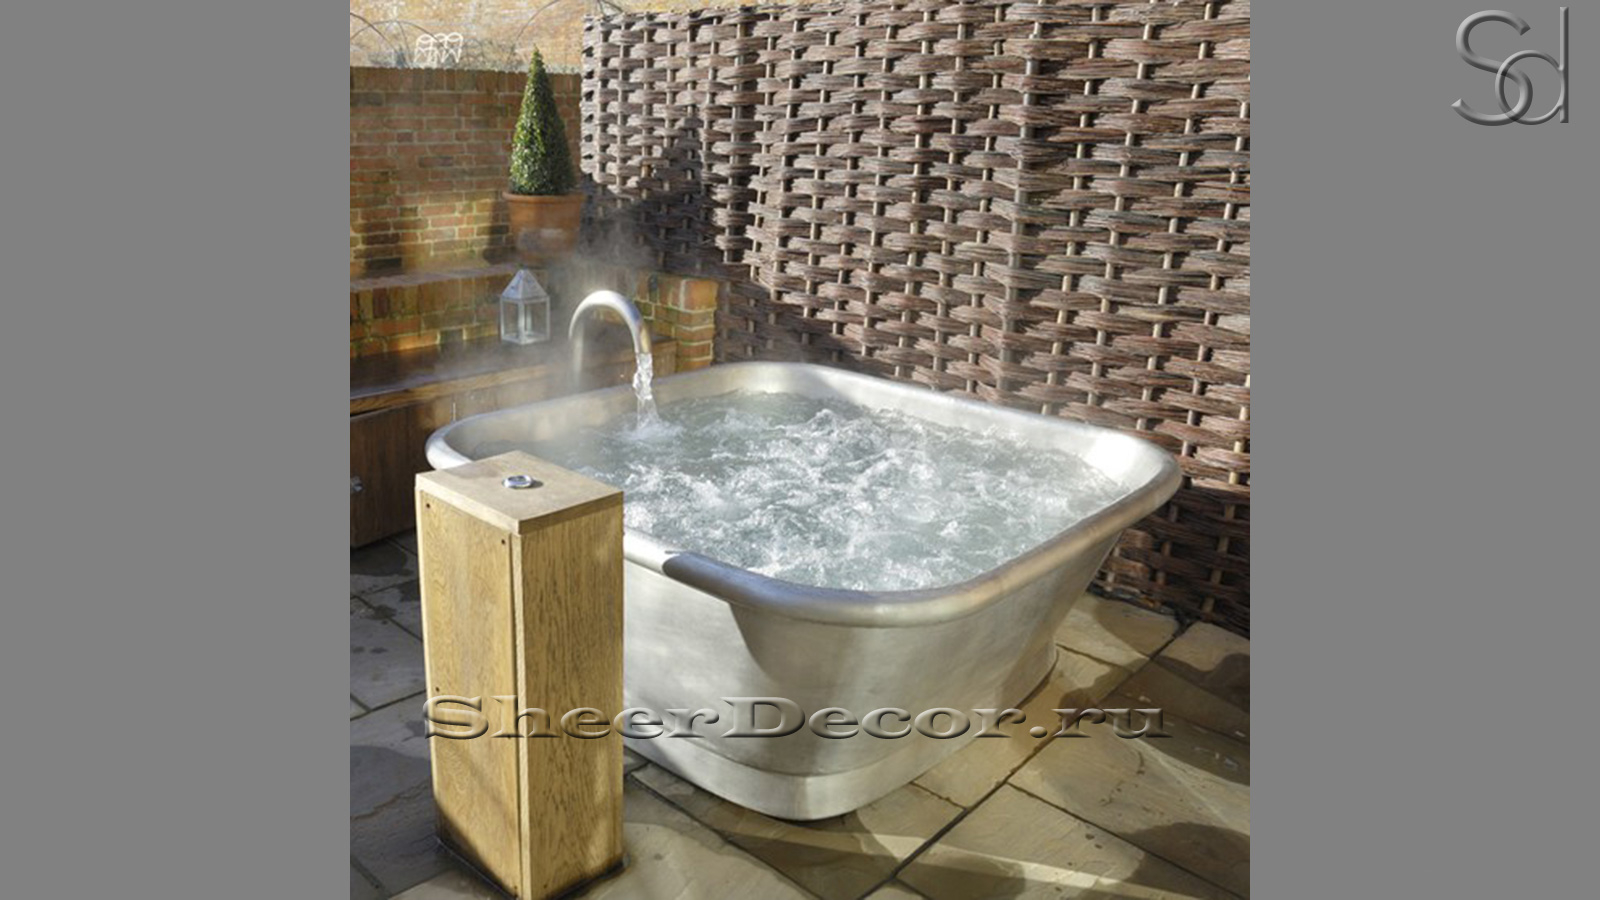 Эксклюзивная бронзовая ванна Сubo Chrome Bronze 735303651 производство ИНДОНЕЗИЯ_1